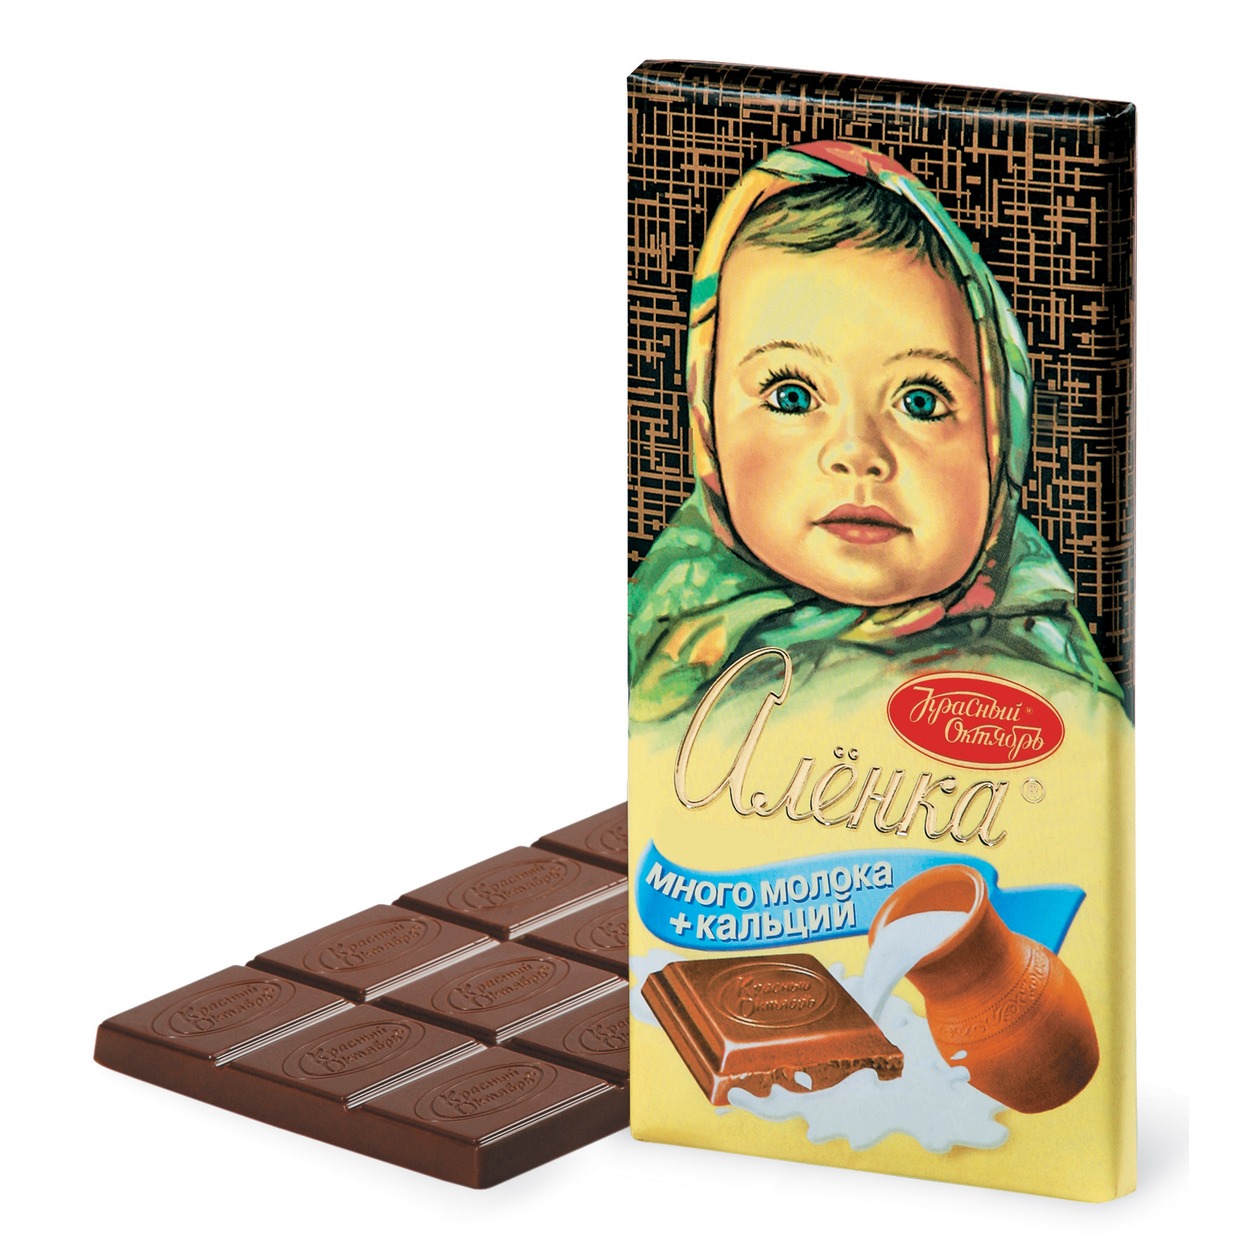 Шоколад Аленка, много молока, Красный Октябрь, 100 г